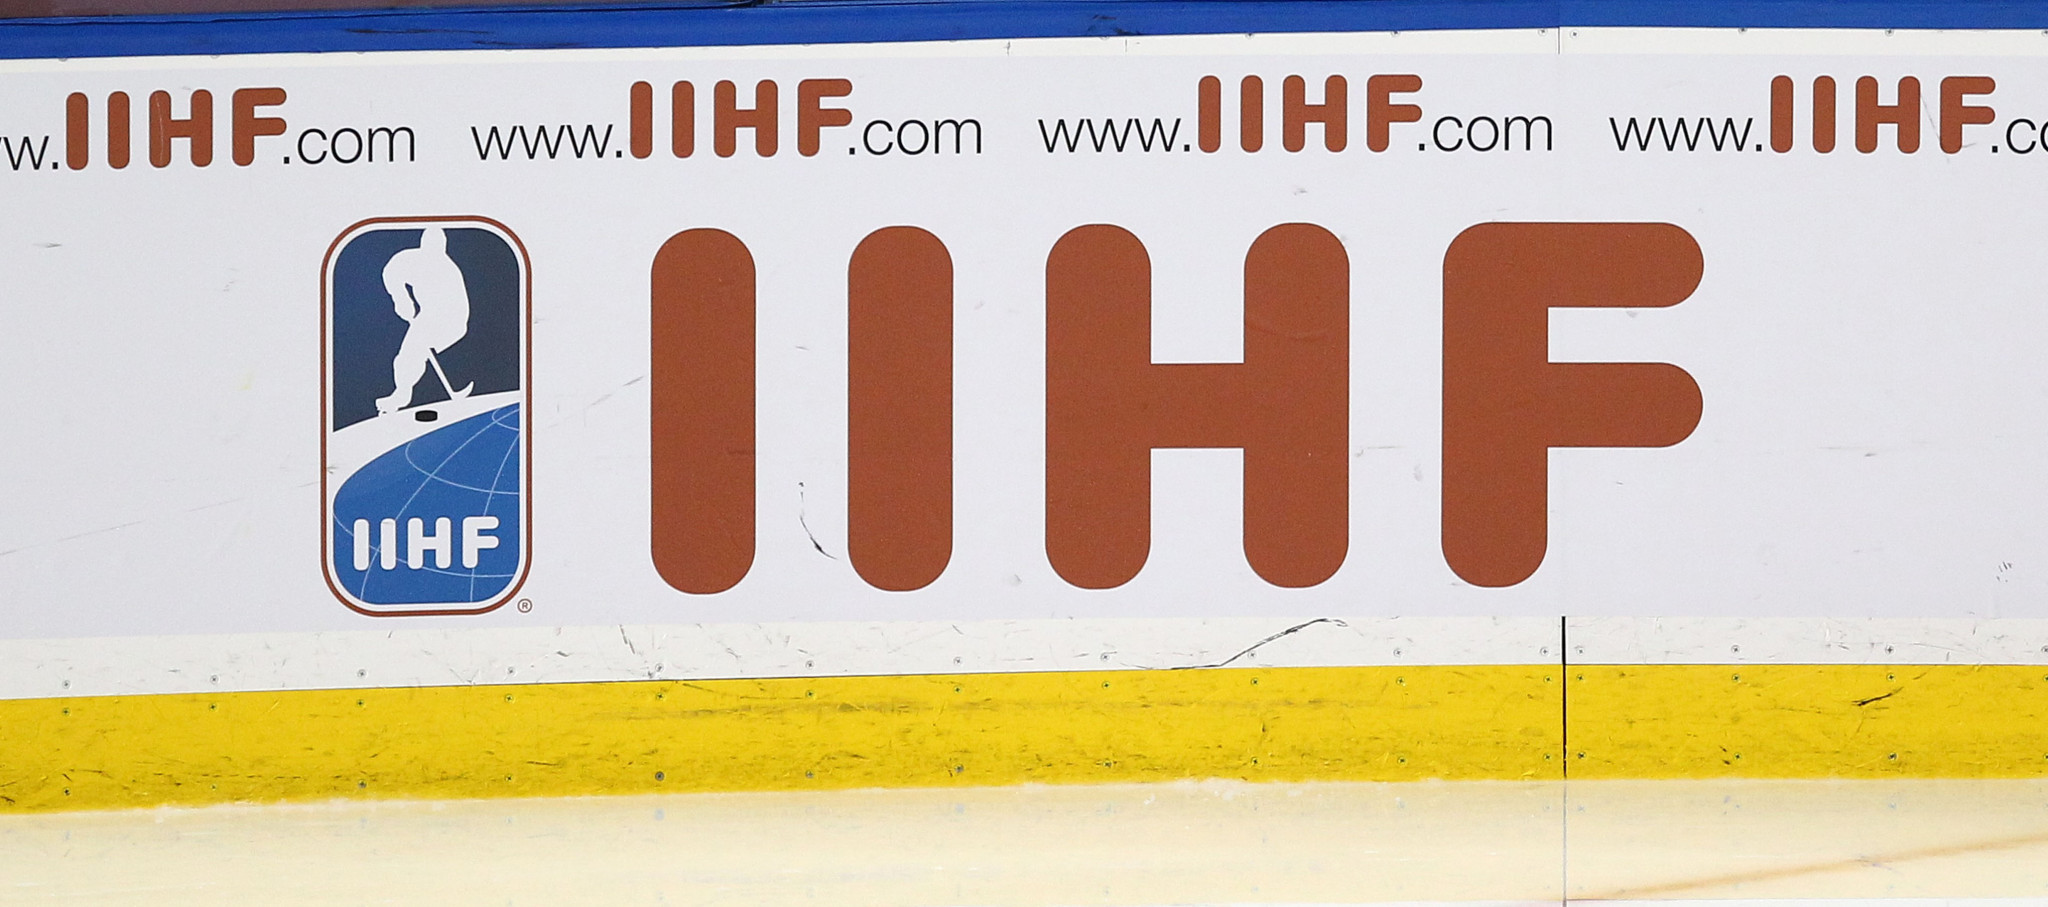 IIHF holds four-day Balkan Ice Making Seminar in Bulgaria